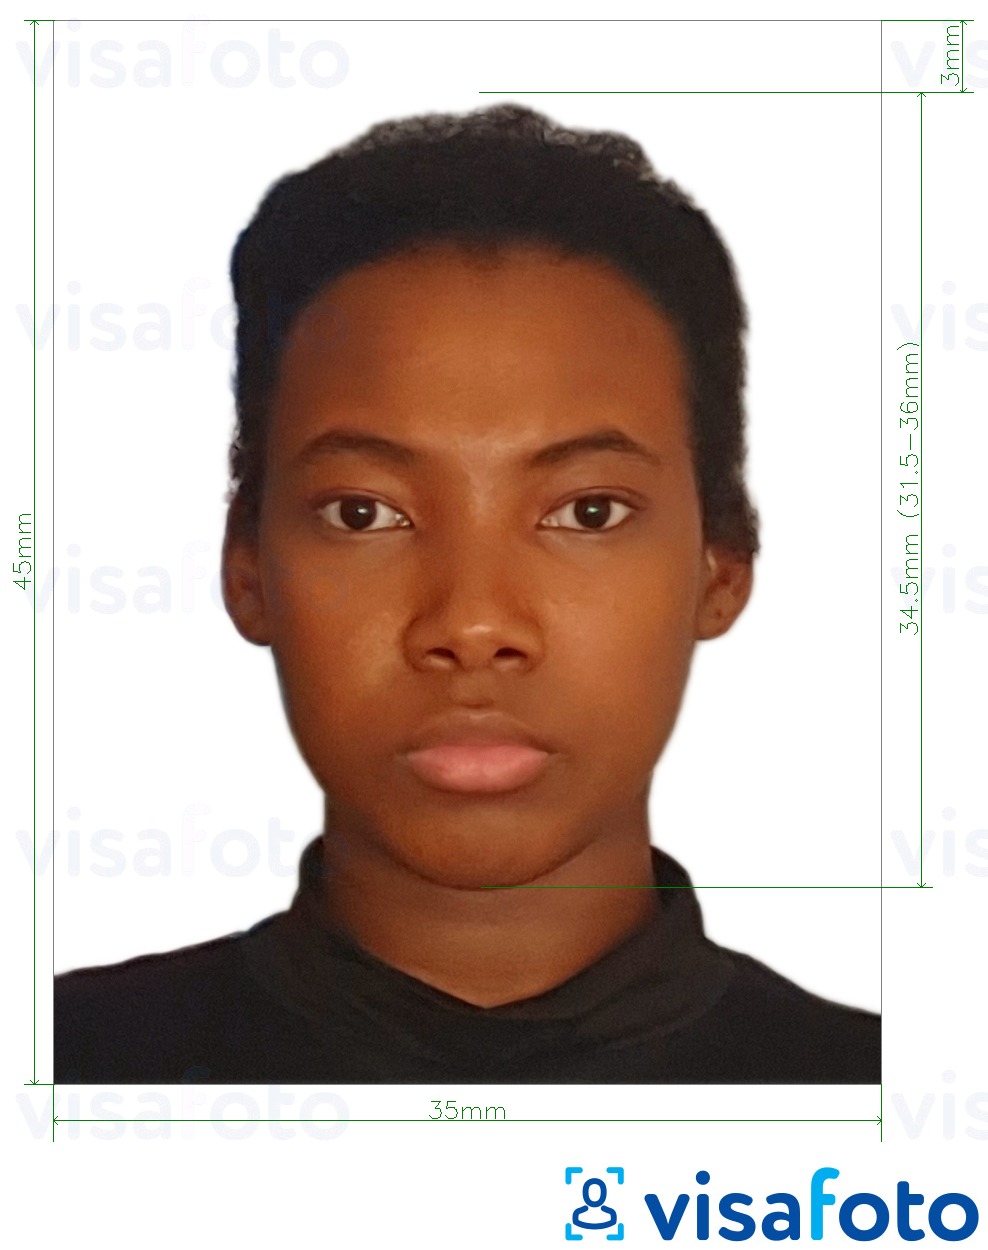 Exemple de foto per a Visa de Burkina Faso 4.5x3.5 cm (45x35 mm) amb la mida exacta especificada